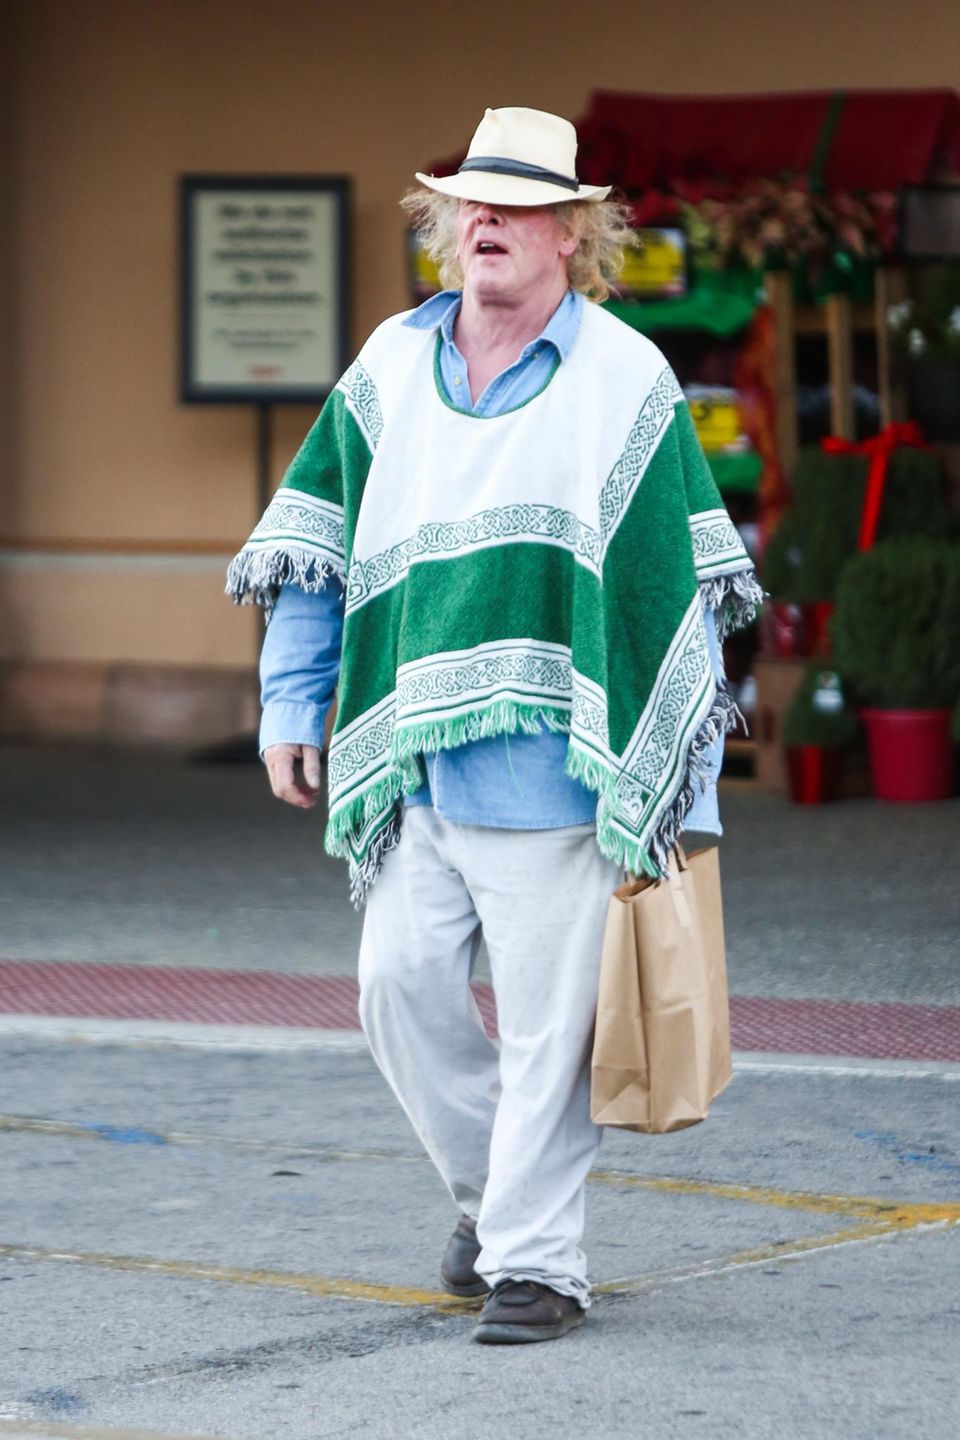 23. November 2013: Mit seinem Poncho und dem Hut fällt Nick Nolte beim Einkaufen in Malibu auf.